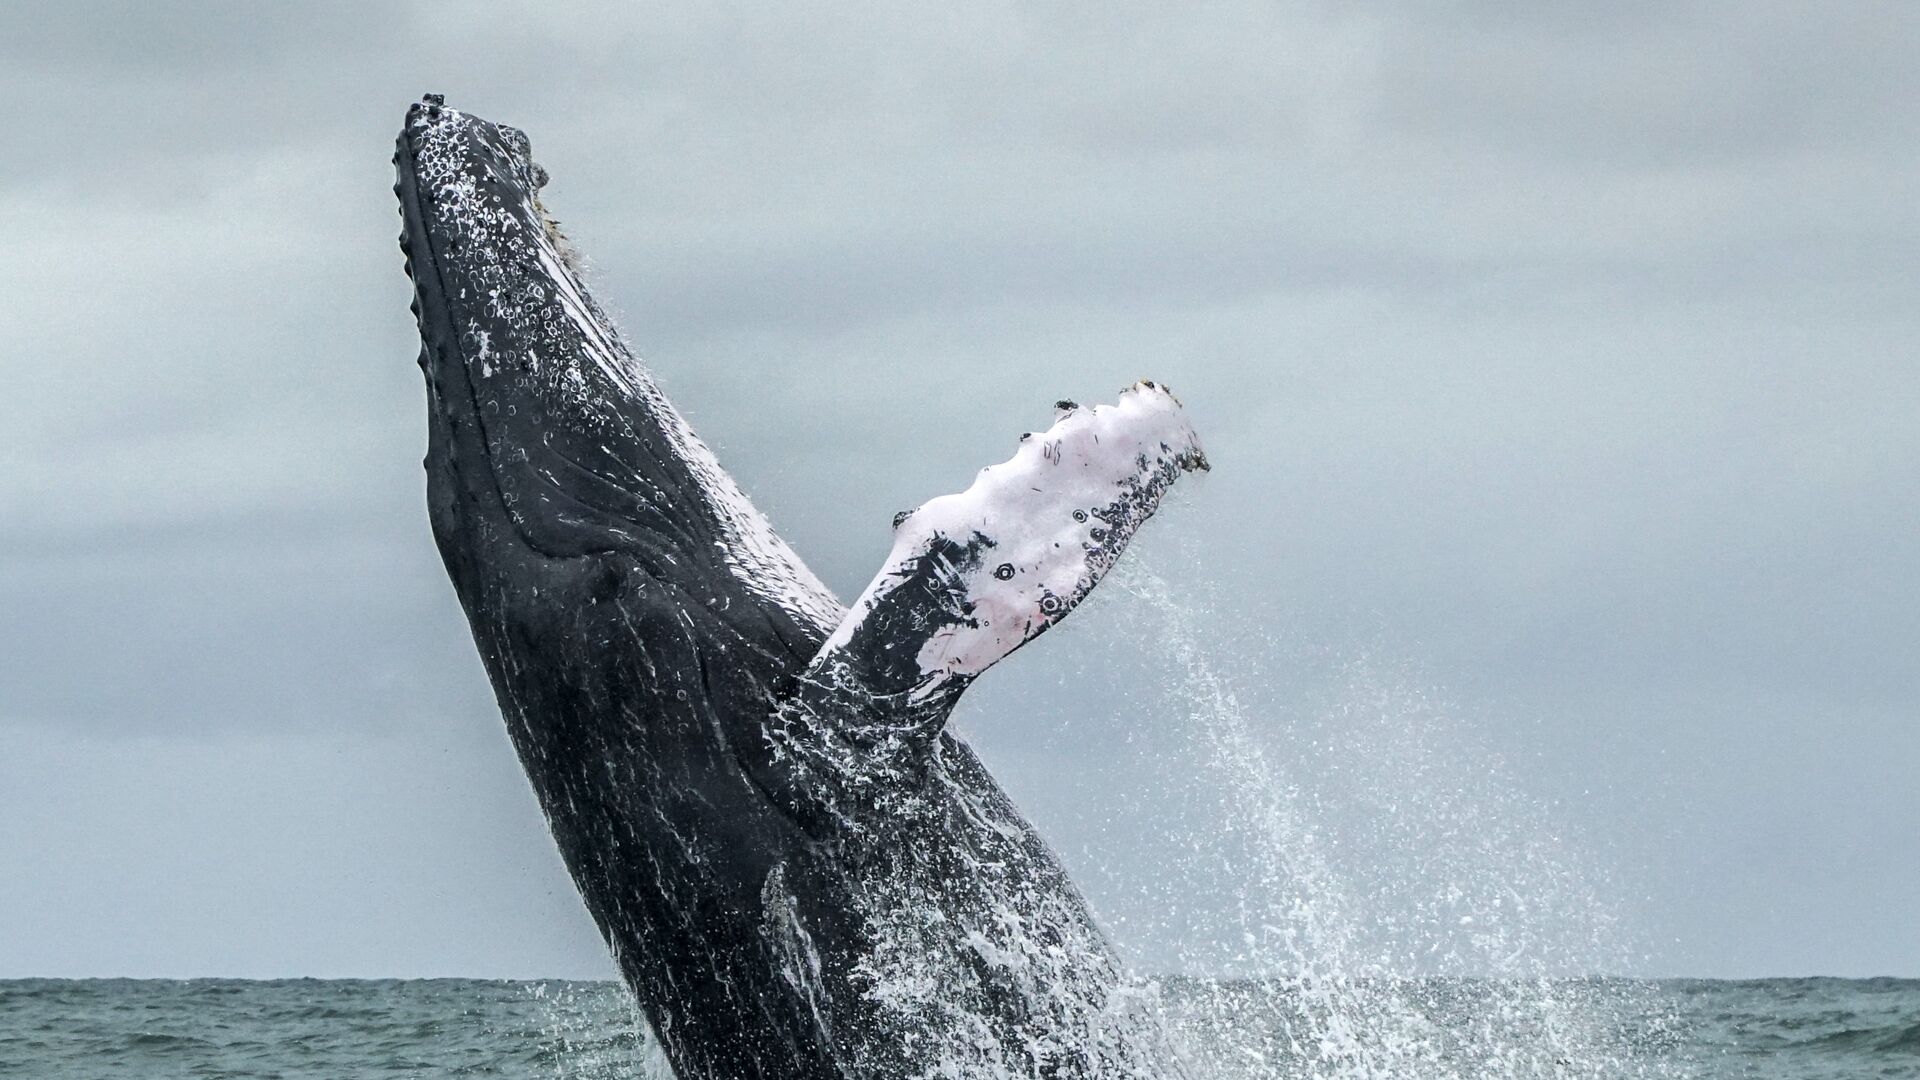 Горбатый кит выпрыгивает на поверхность Тихого океана в Национальном парке Урамба, Колумбия. 12 августа 2018 года - РИА Новости, 1920, 16.05.2019